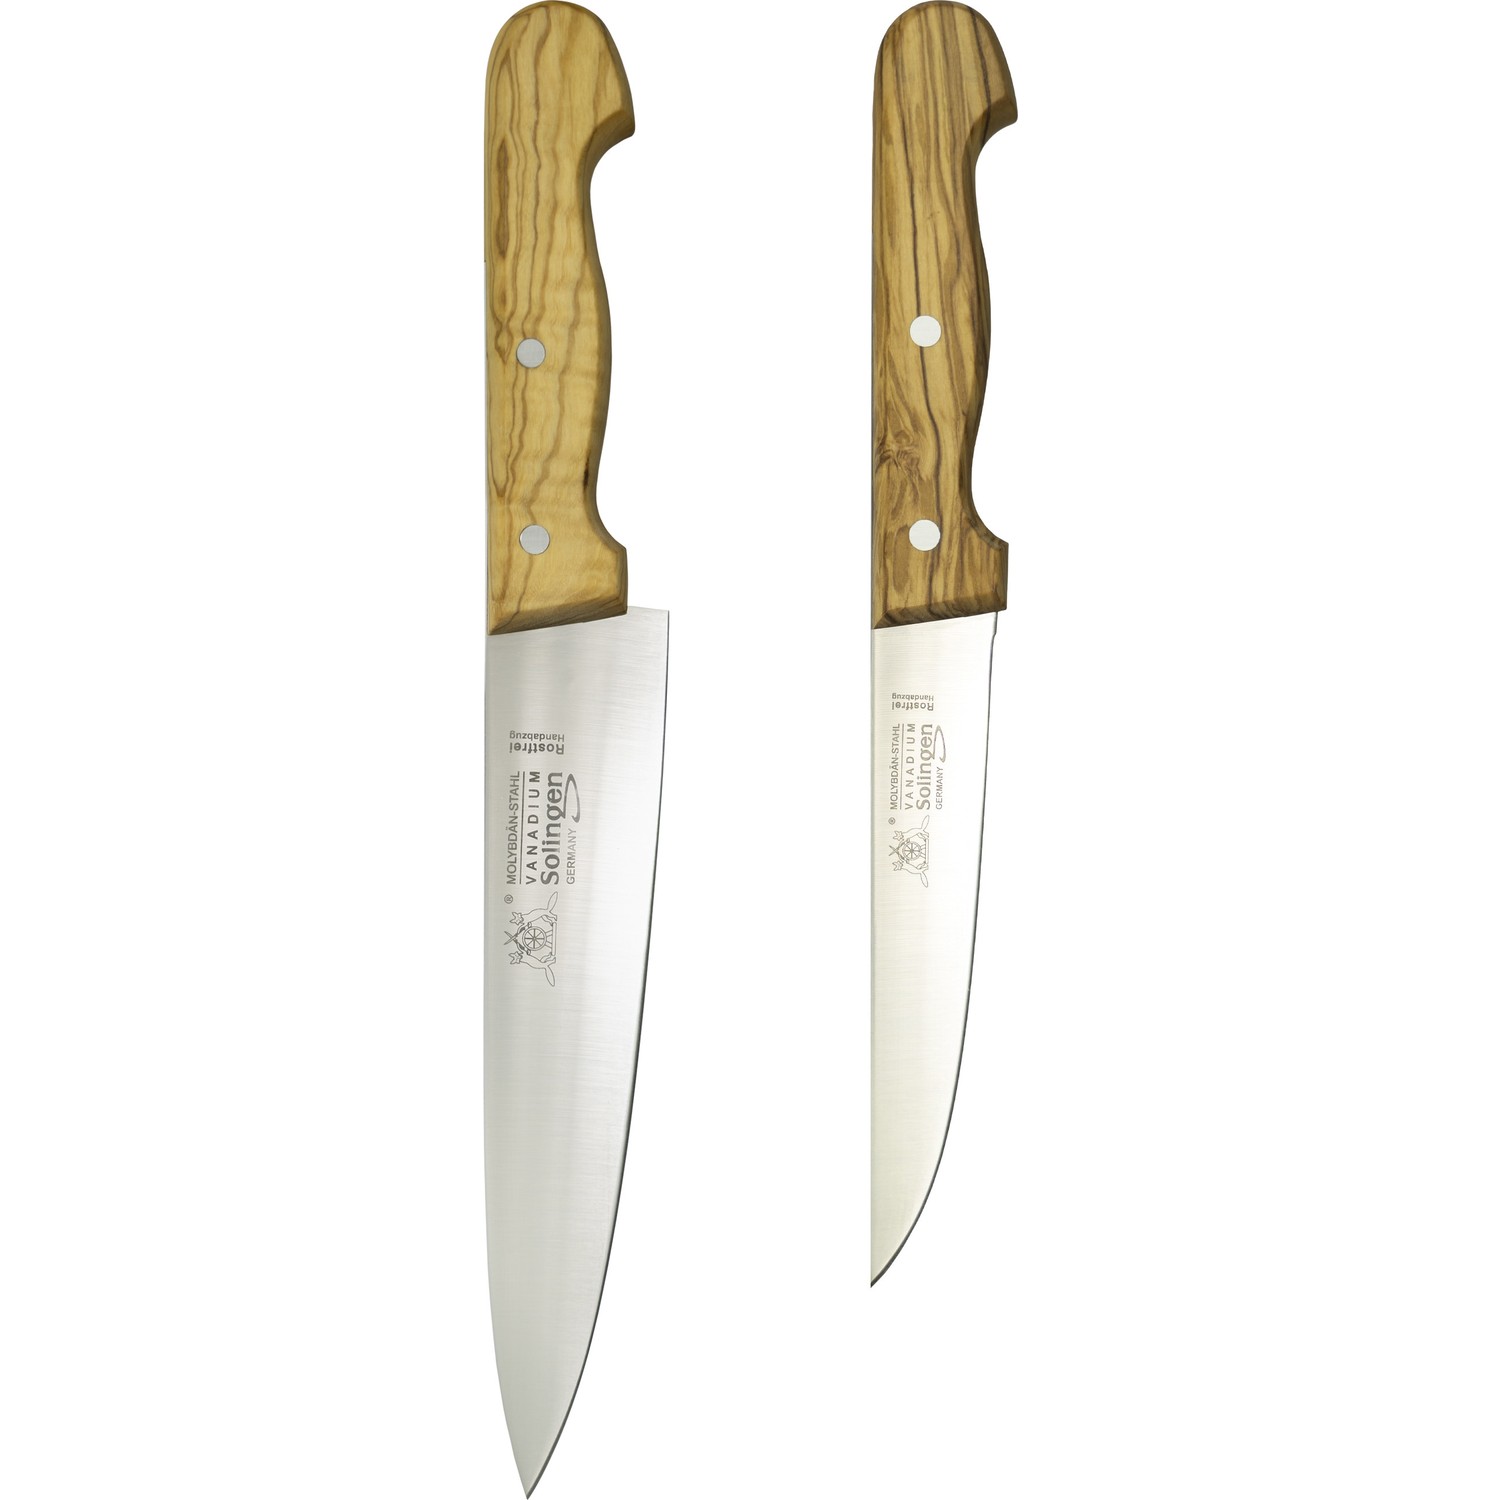 Solingen Zeytin Saplı Et Bıçağı 2'li Takım Fiyatı